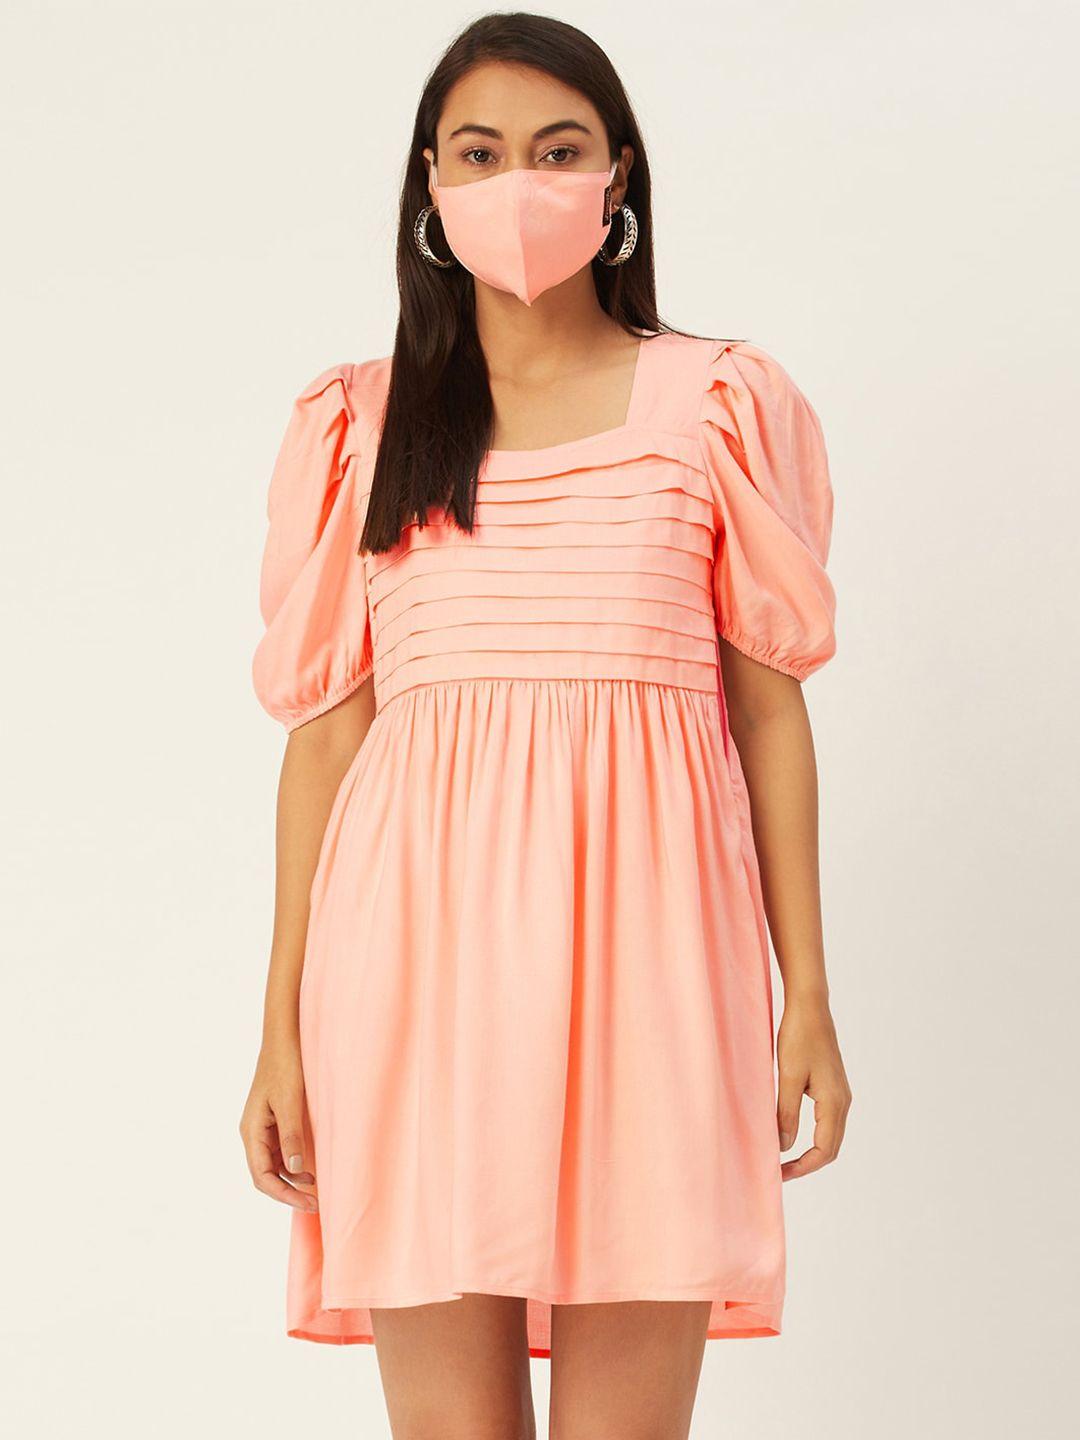 diva walk exclusive pink dress